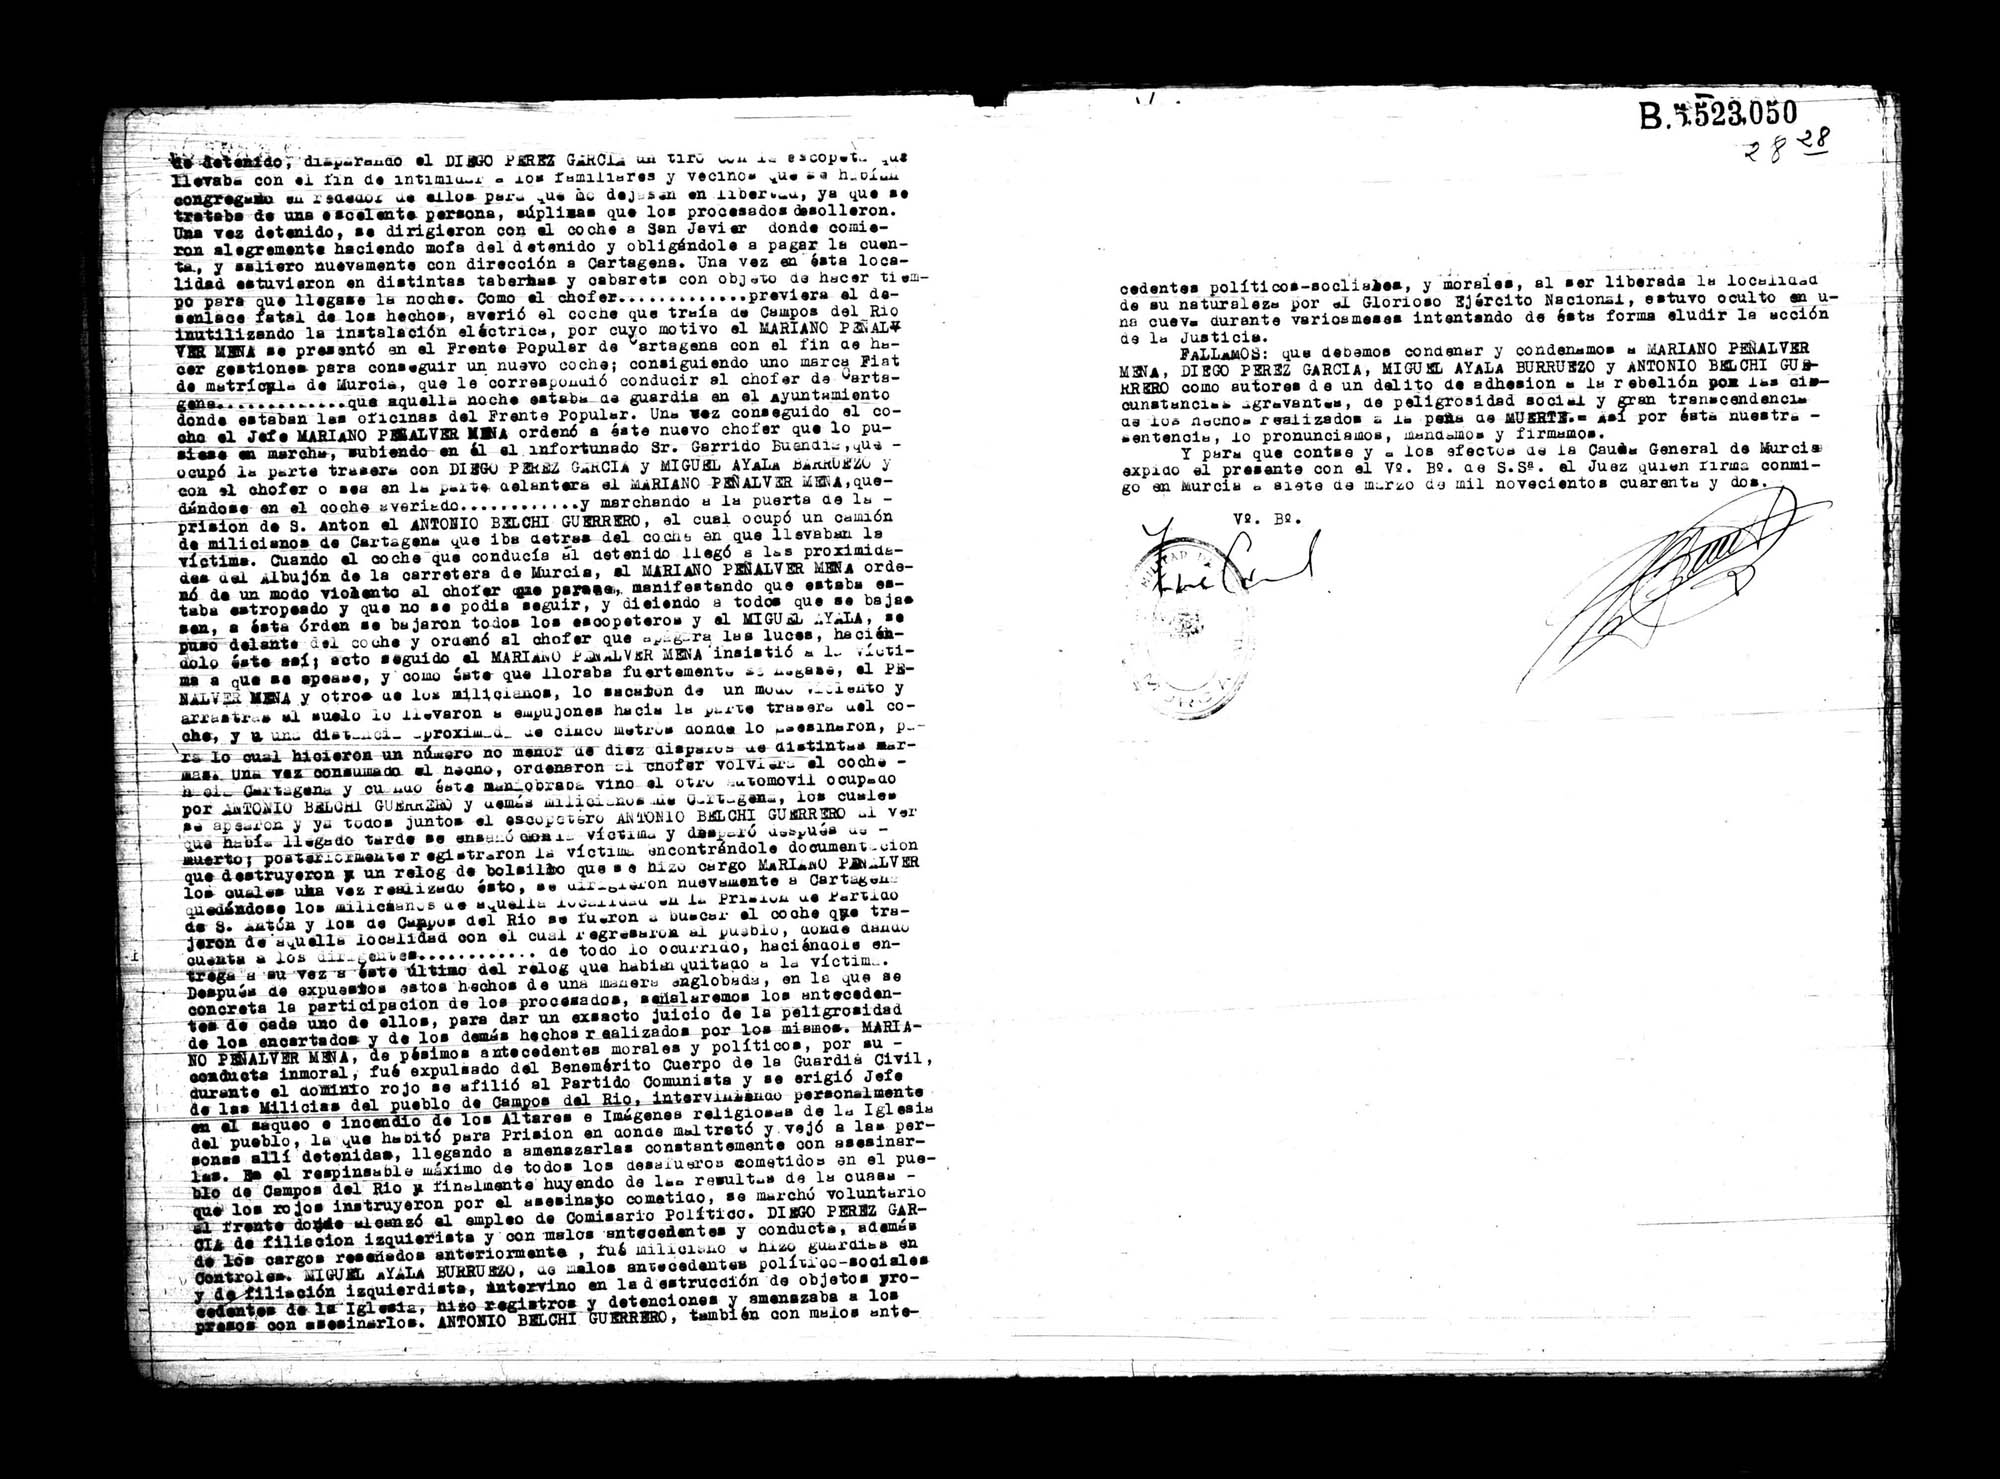 Certificado de la sentencia pronunciada contra Mariano Peñalver Mesa, Diego Pérez García, Miguel Ayala Burruezo y Antonio Belchí Guerrero, causa 2950, el 27 de junio de 1940 en Murcia.